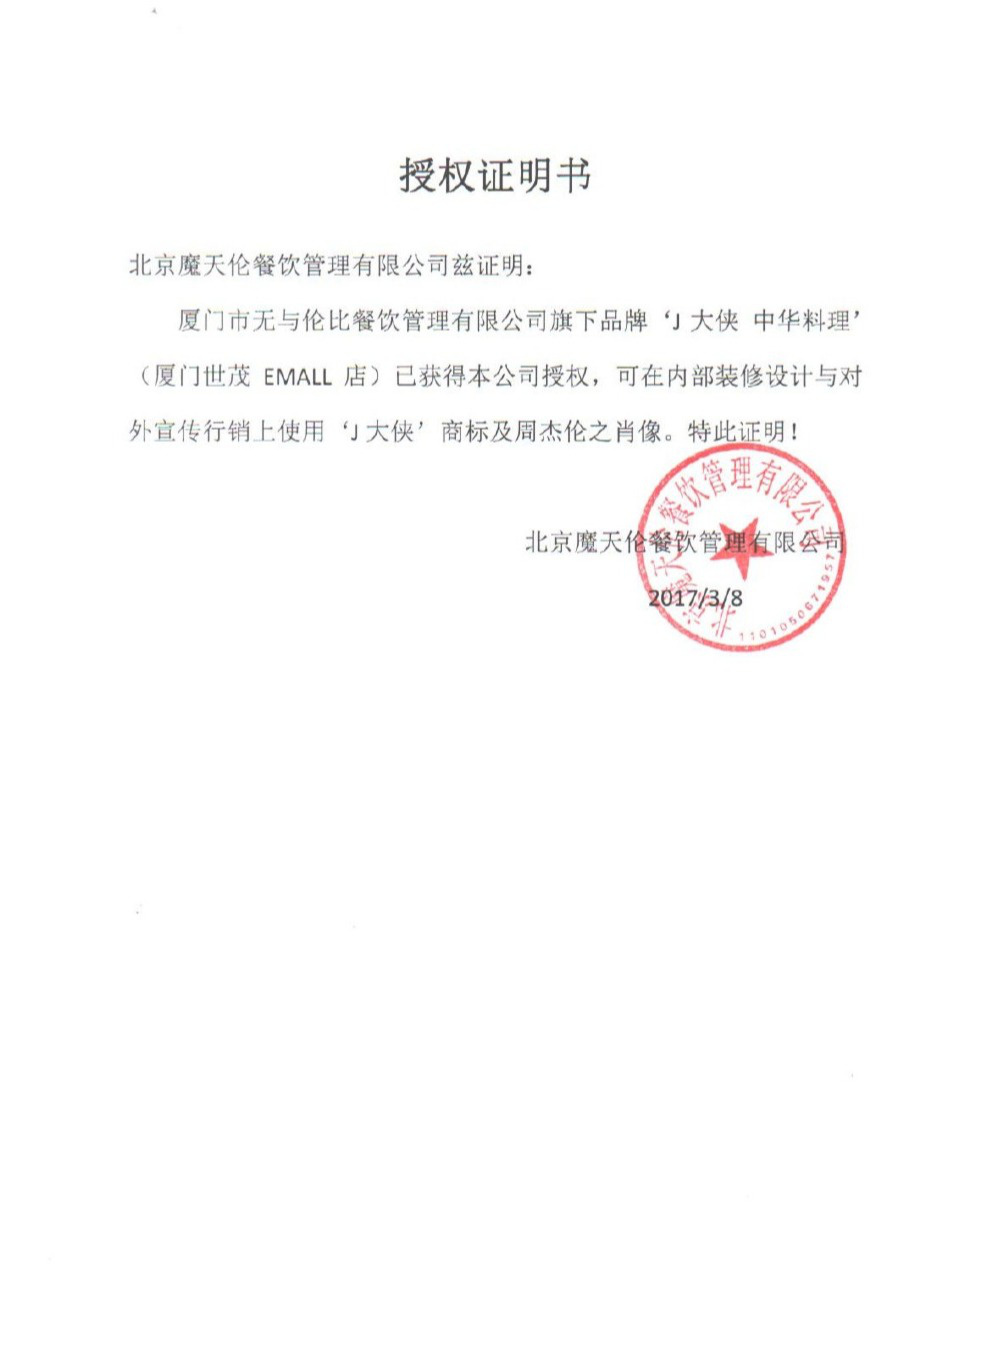 伦比餐饮管理有限公司与北京魔天伦餐饮管理有限公司签订的授权证明书